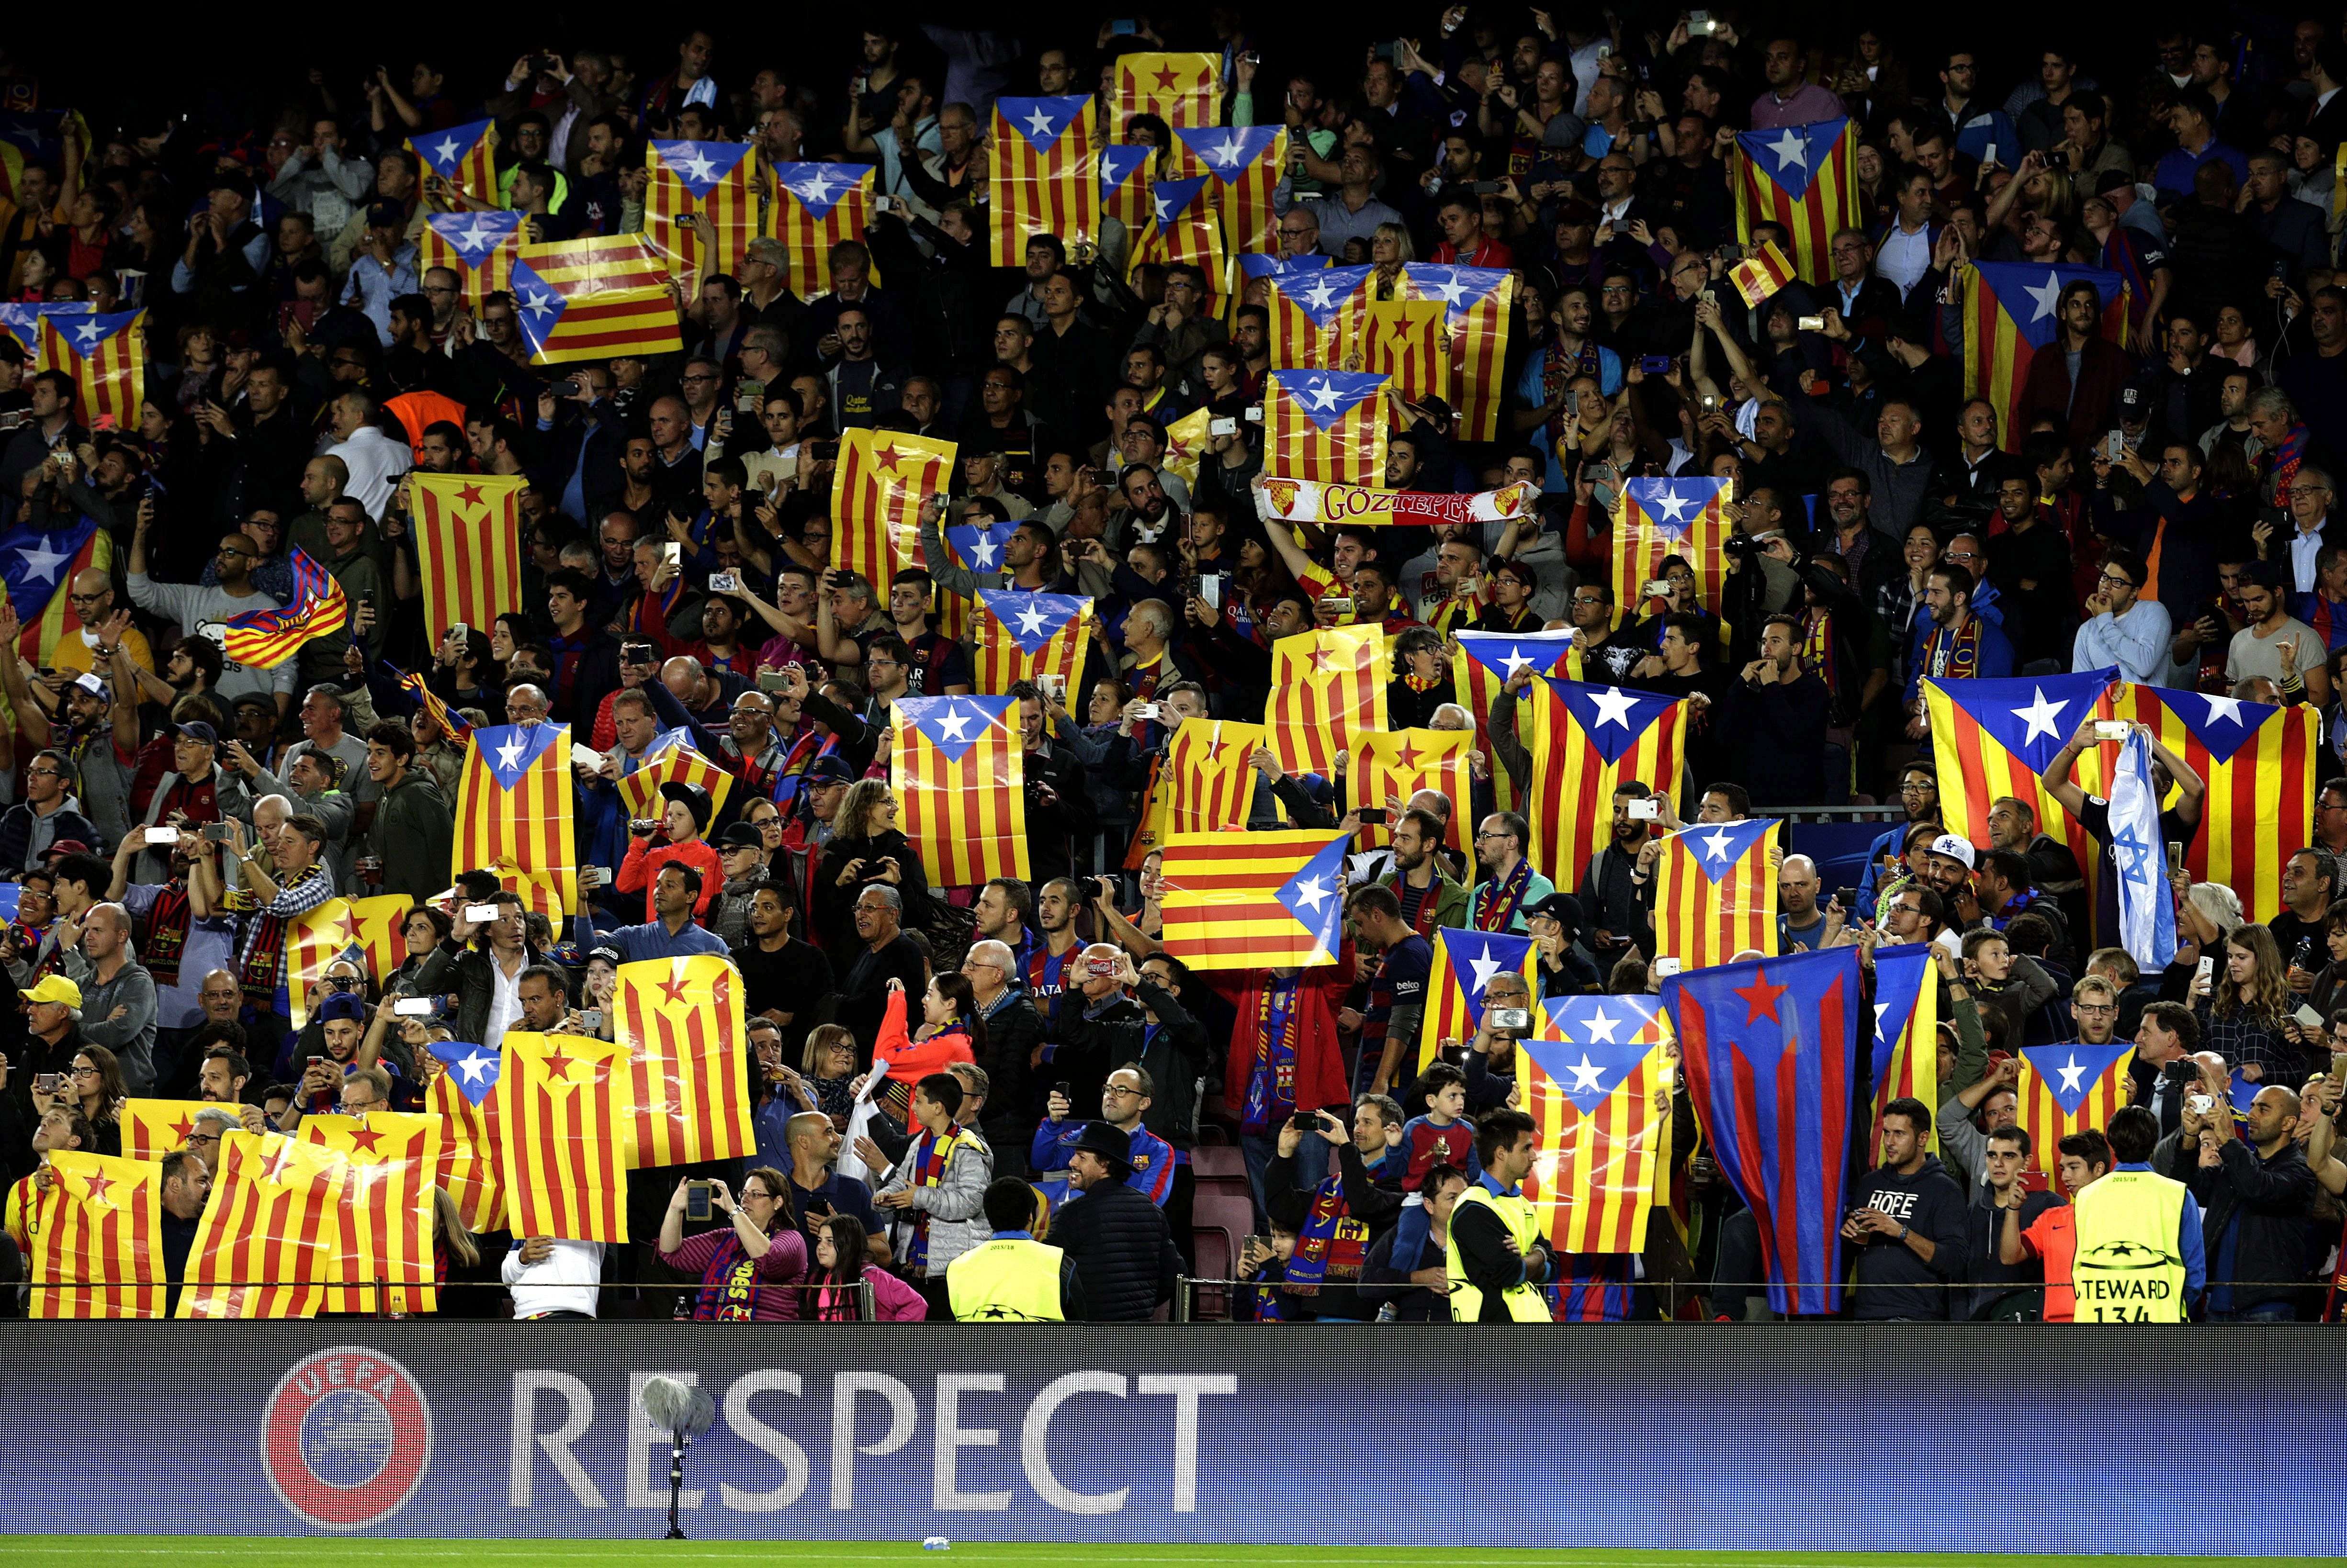 El Barça referma el suport al dret a decidir